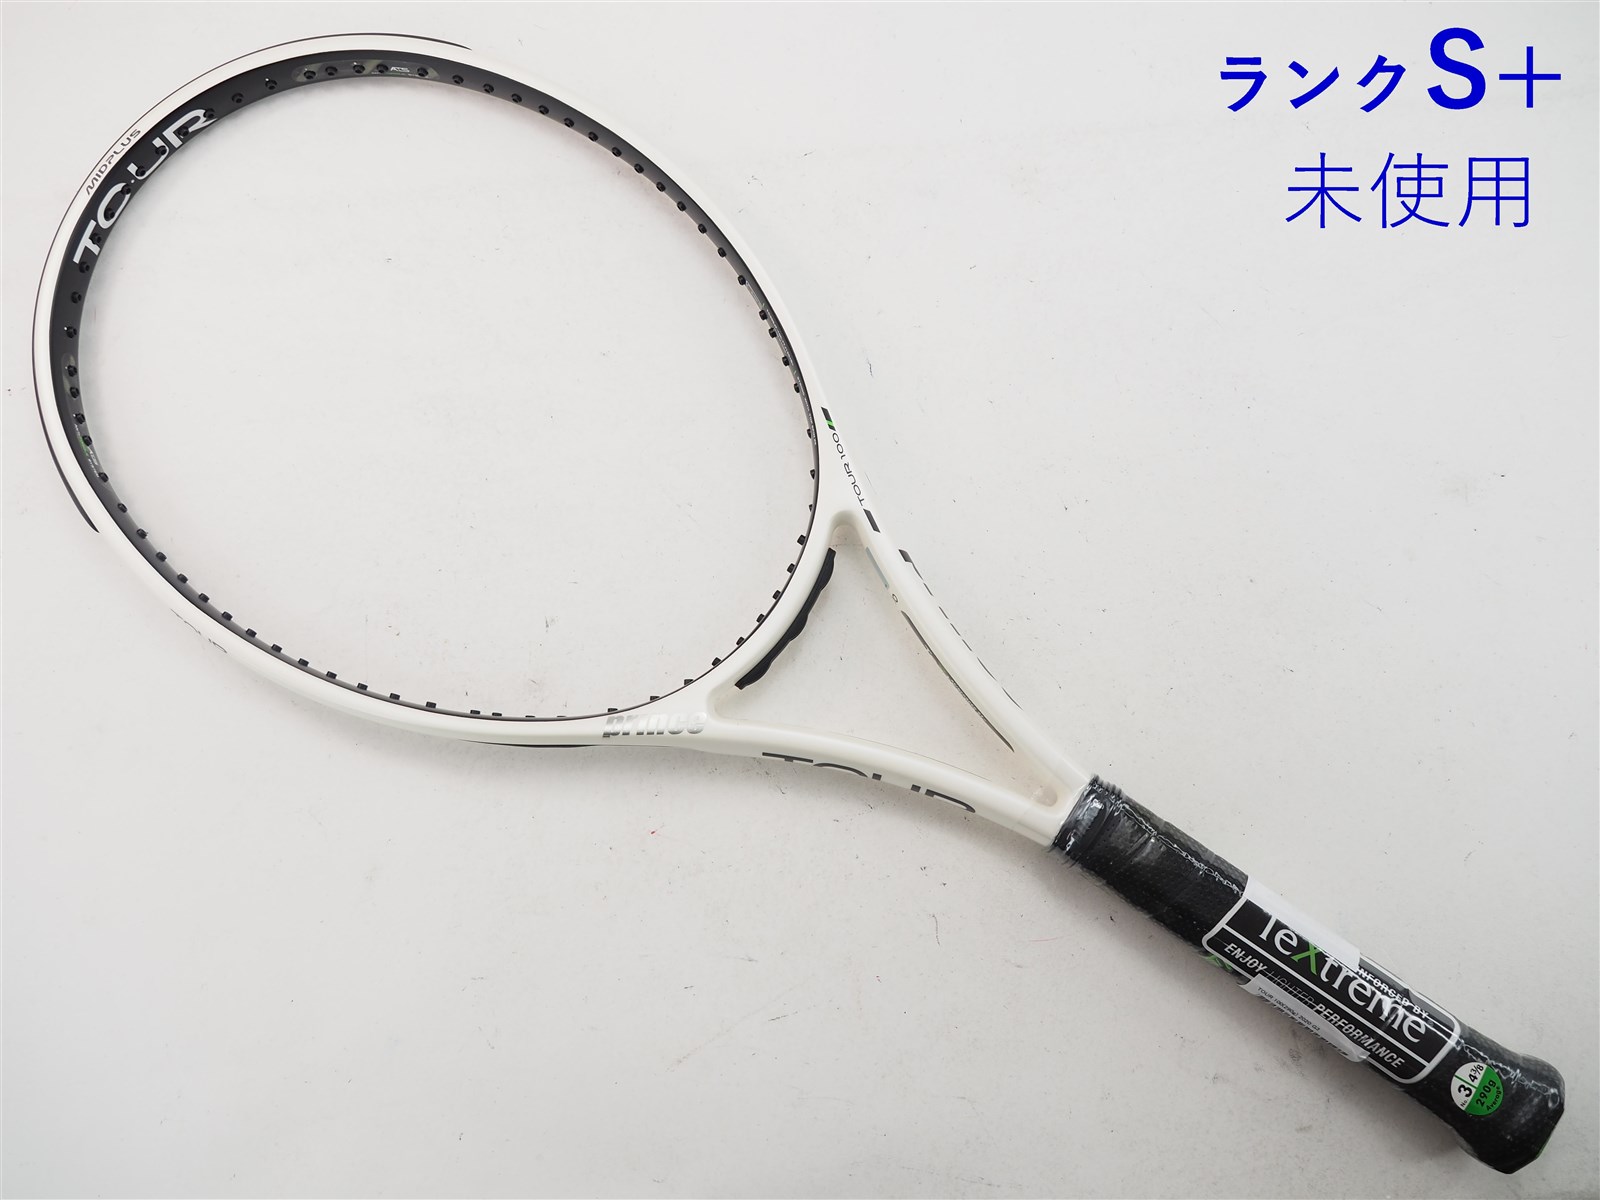 特価買取prince TOUR100 310g G3 未使用 テニス ラケット ラケット(硬式用)